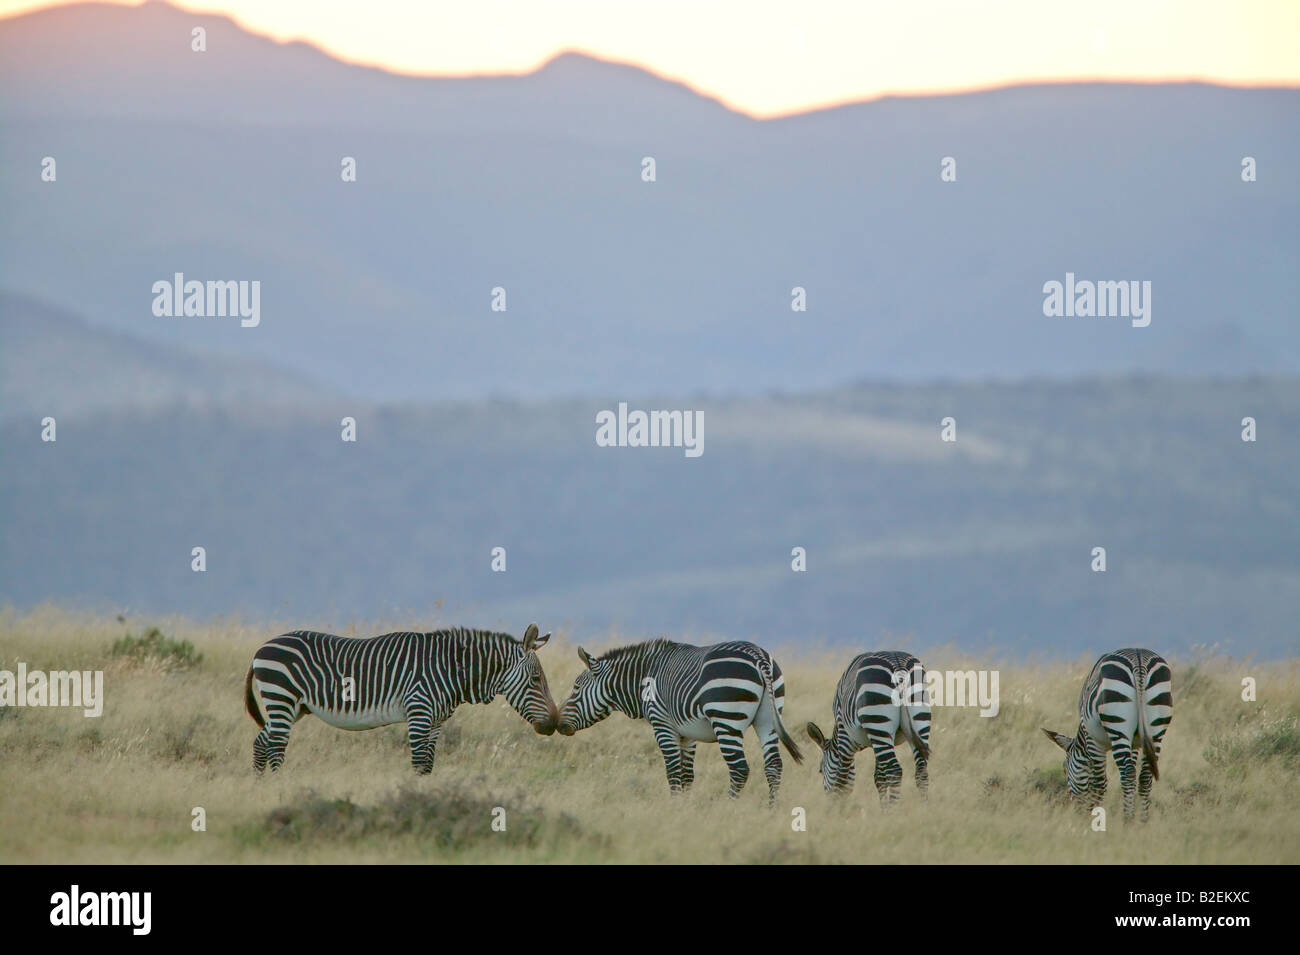 A Cape mountain zebra herd feeding in a mountainous habitat Stock Photo